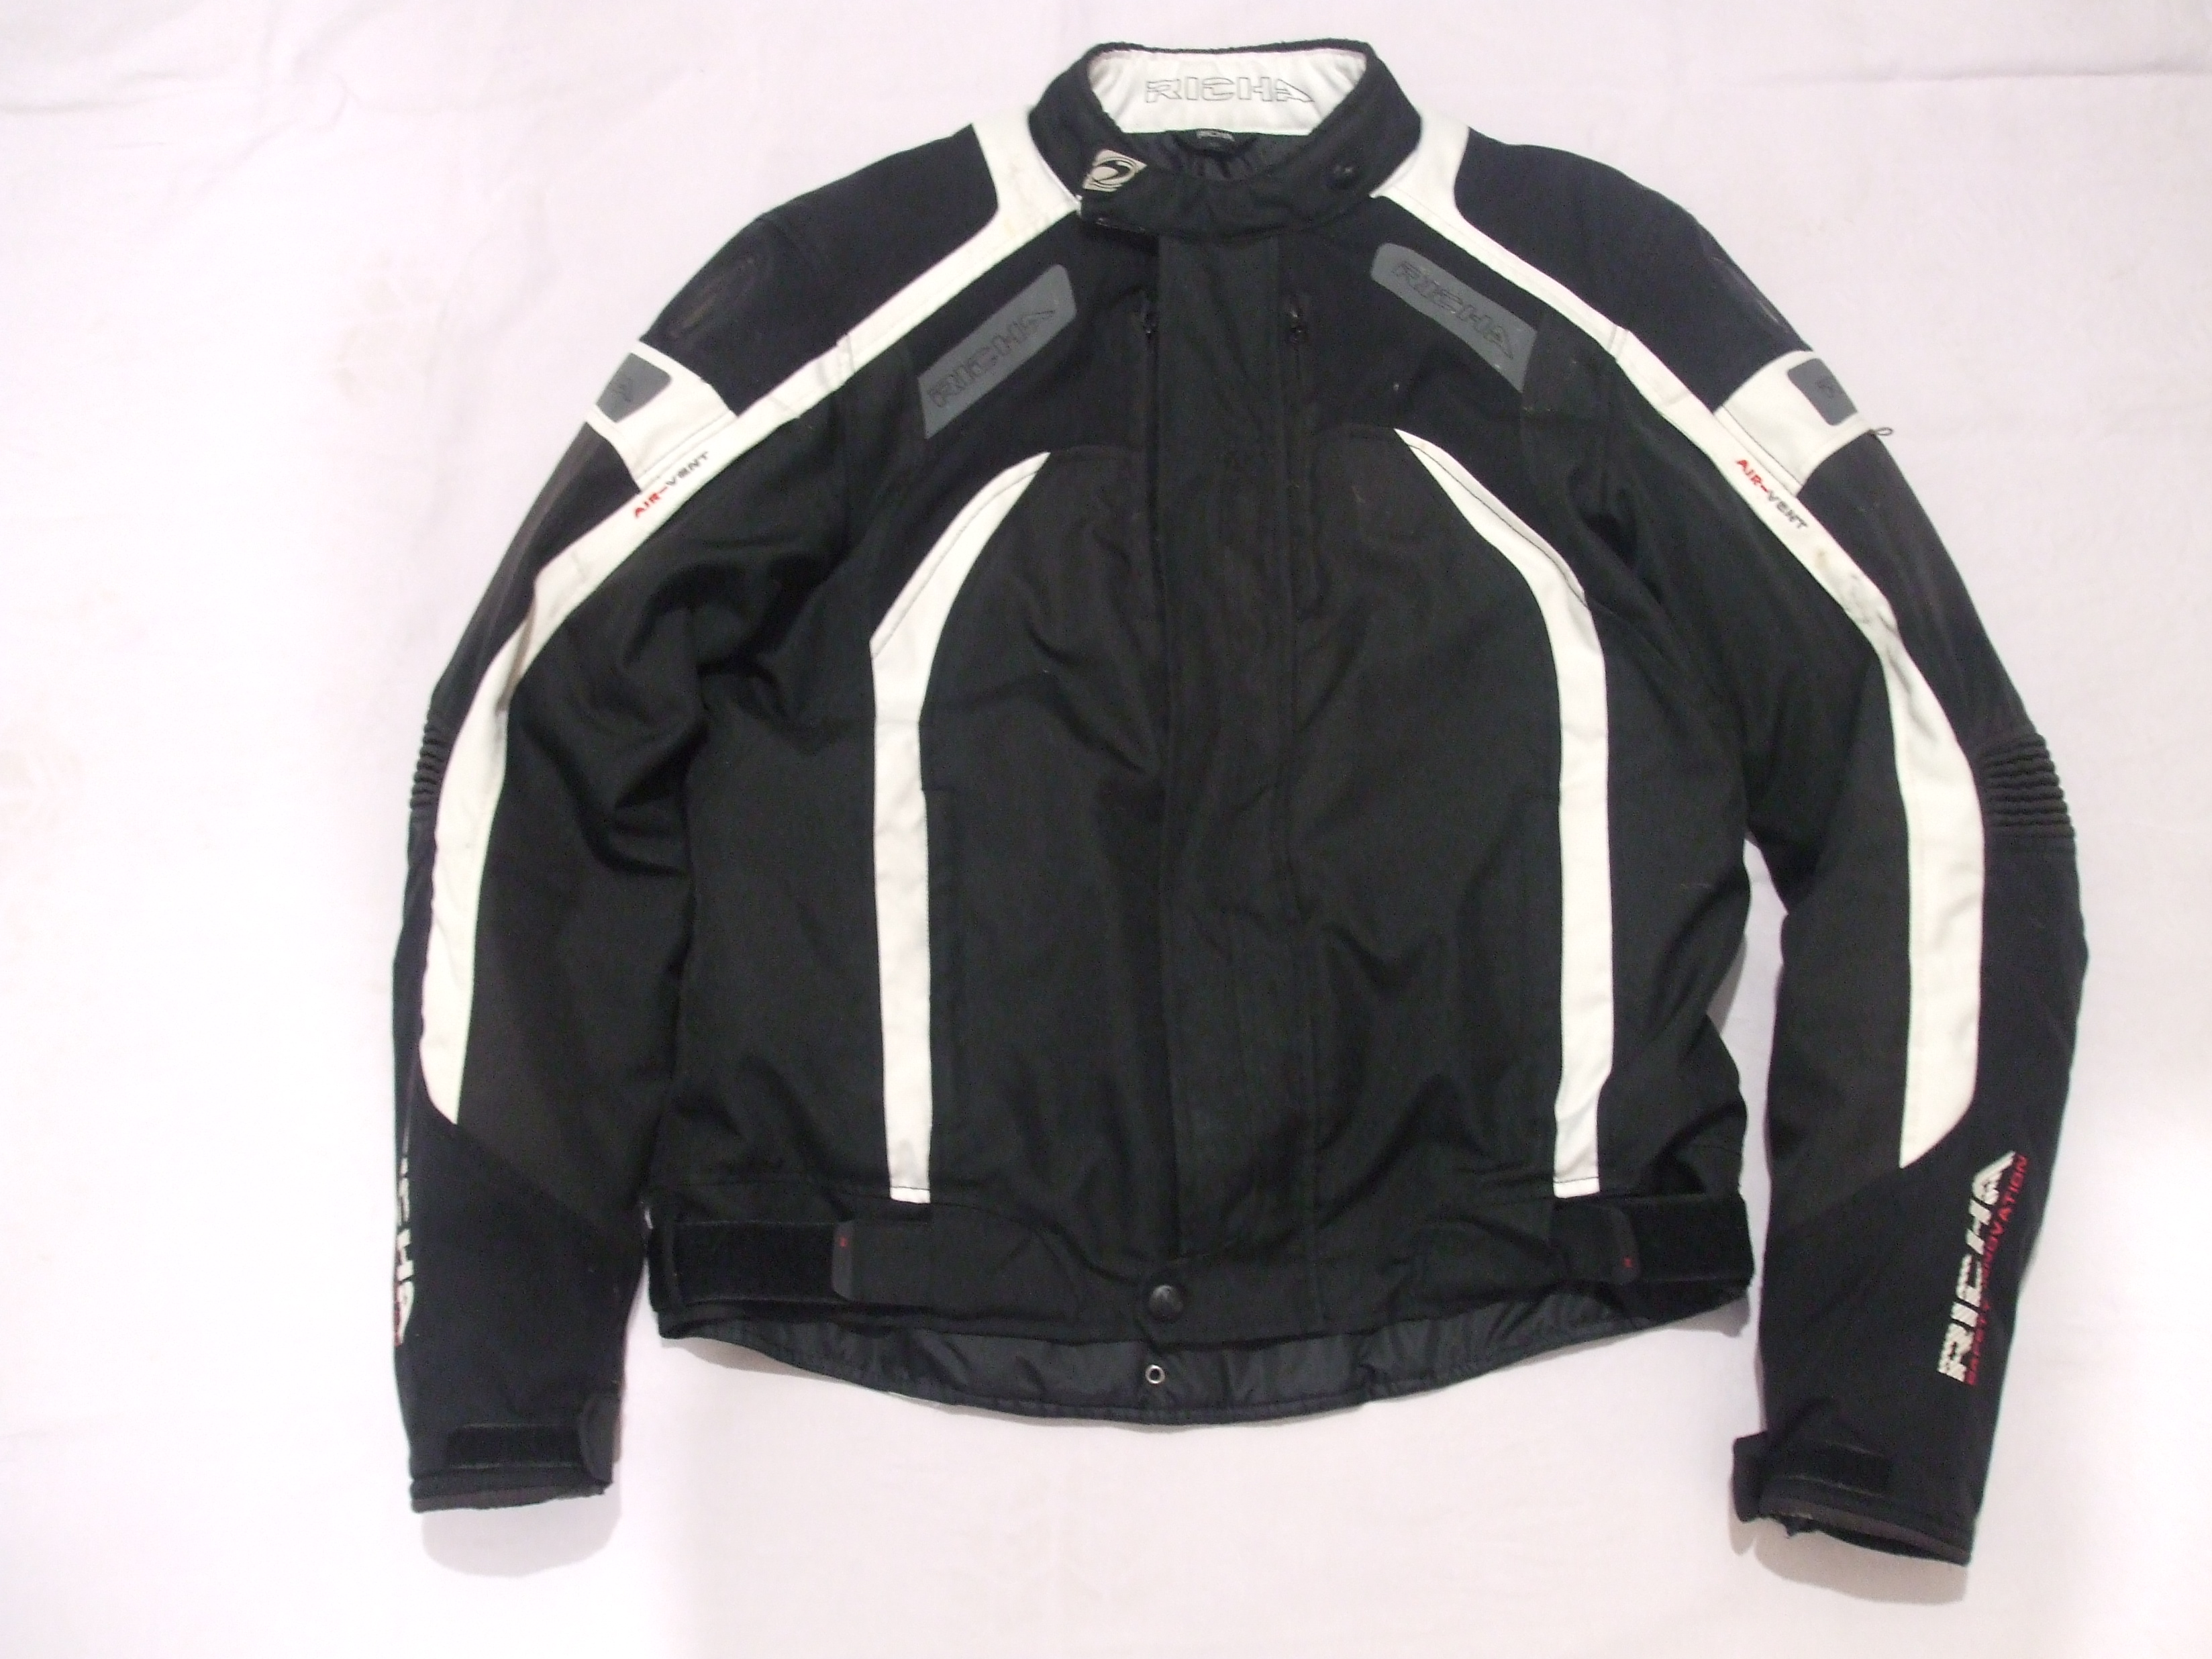 Moto textilná bunda  RICHA, čierno- biela, veľ. XL, č. 1985